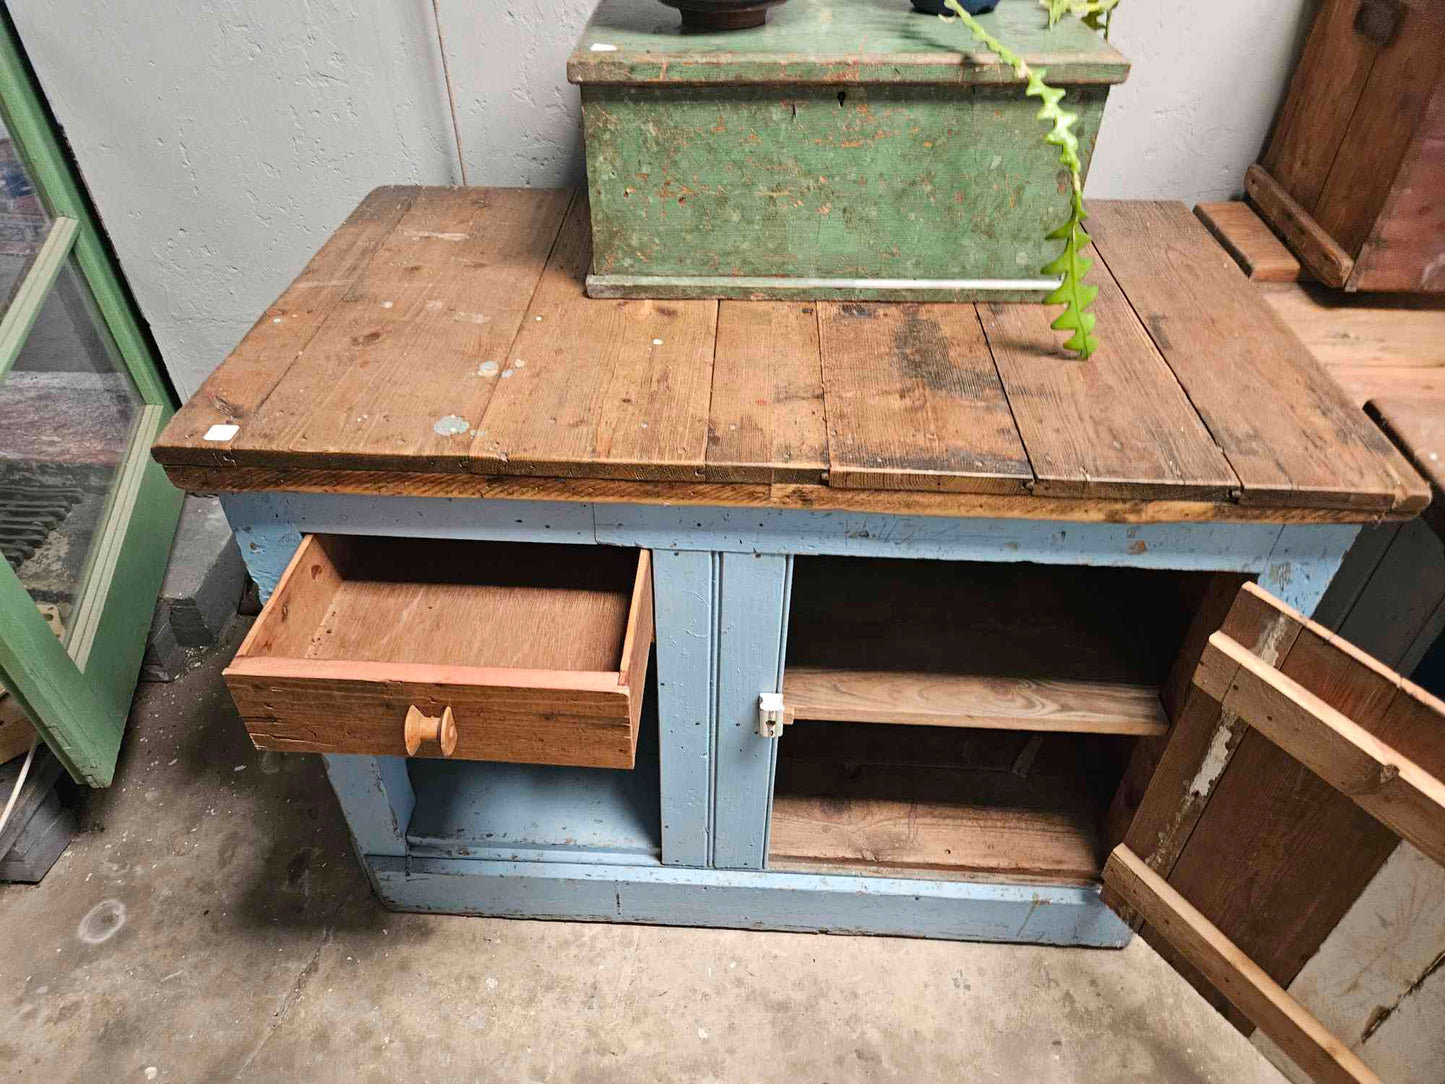 Rustic work bench / kitchen island